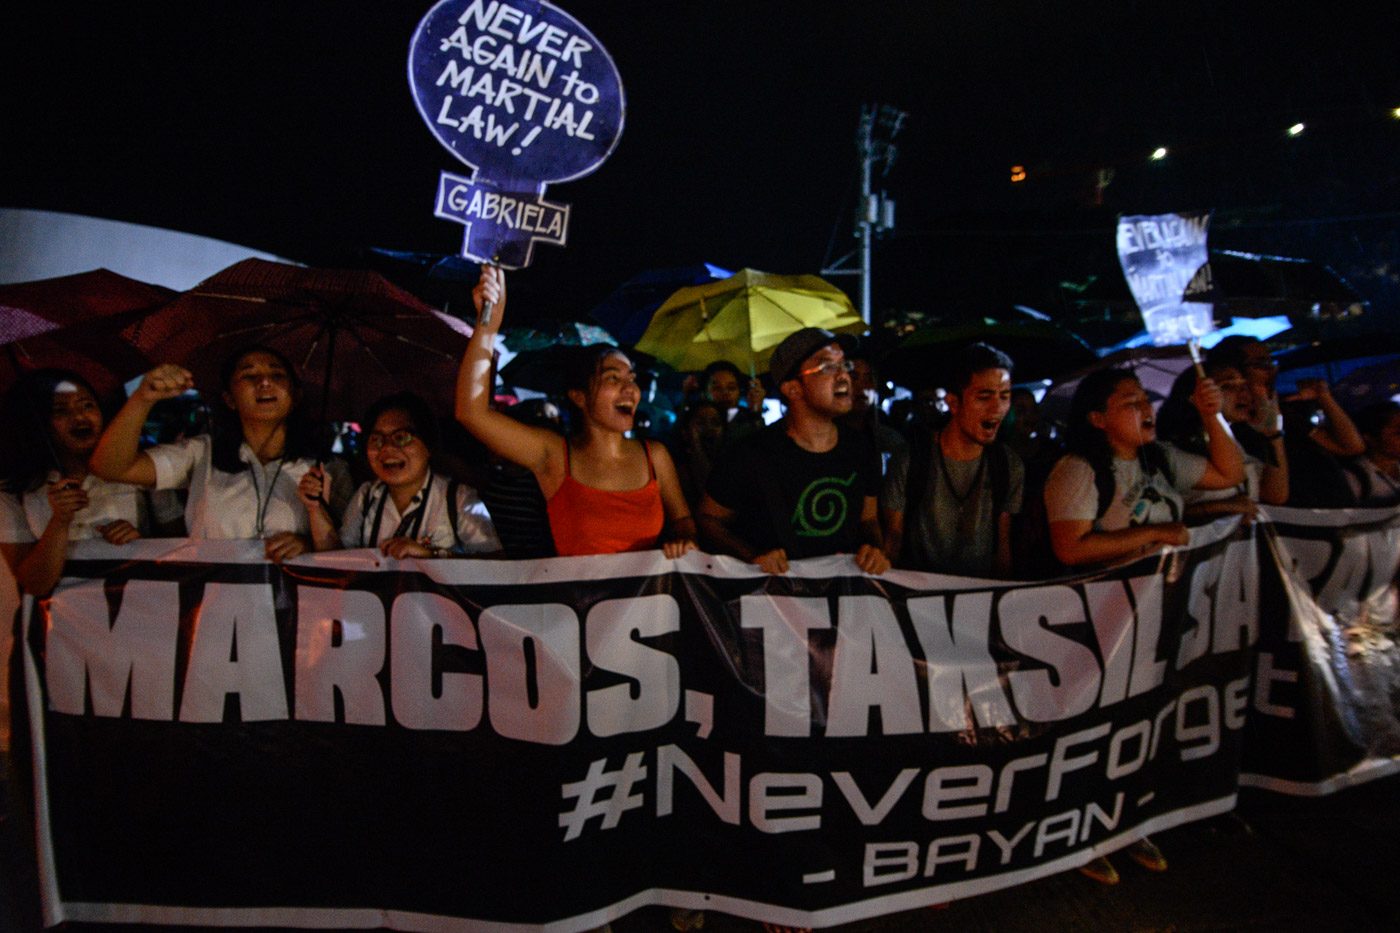 Schedule: November 25 rallies vs Marcos